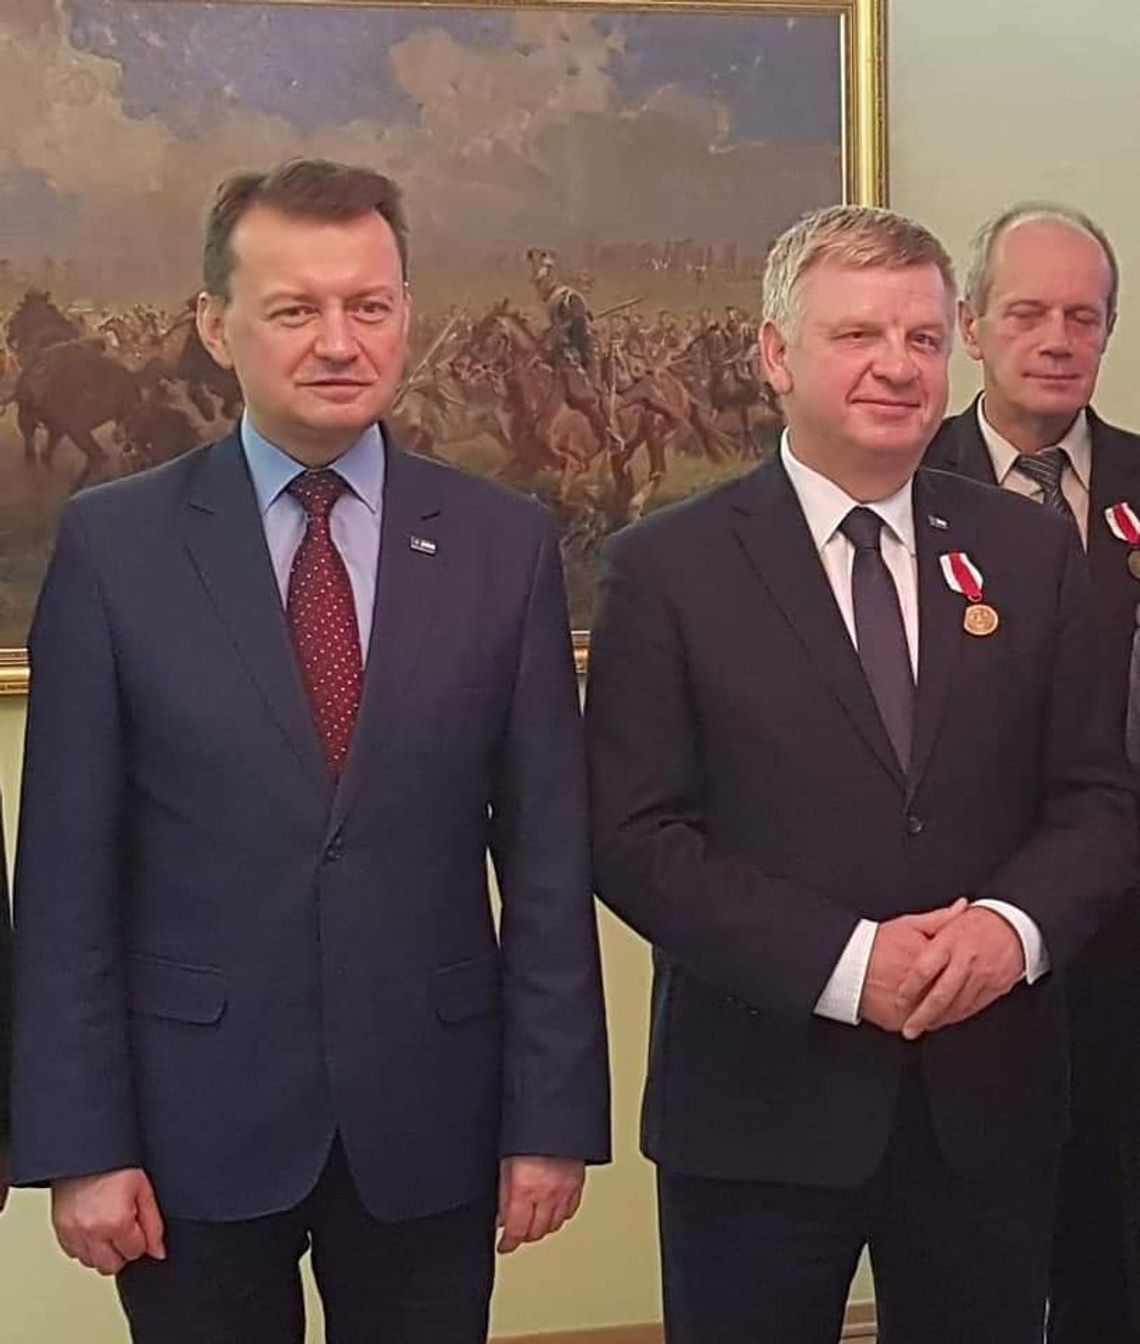 Senator Rusiecki odznaczony "Za zasługi dla obronności kraju"